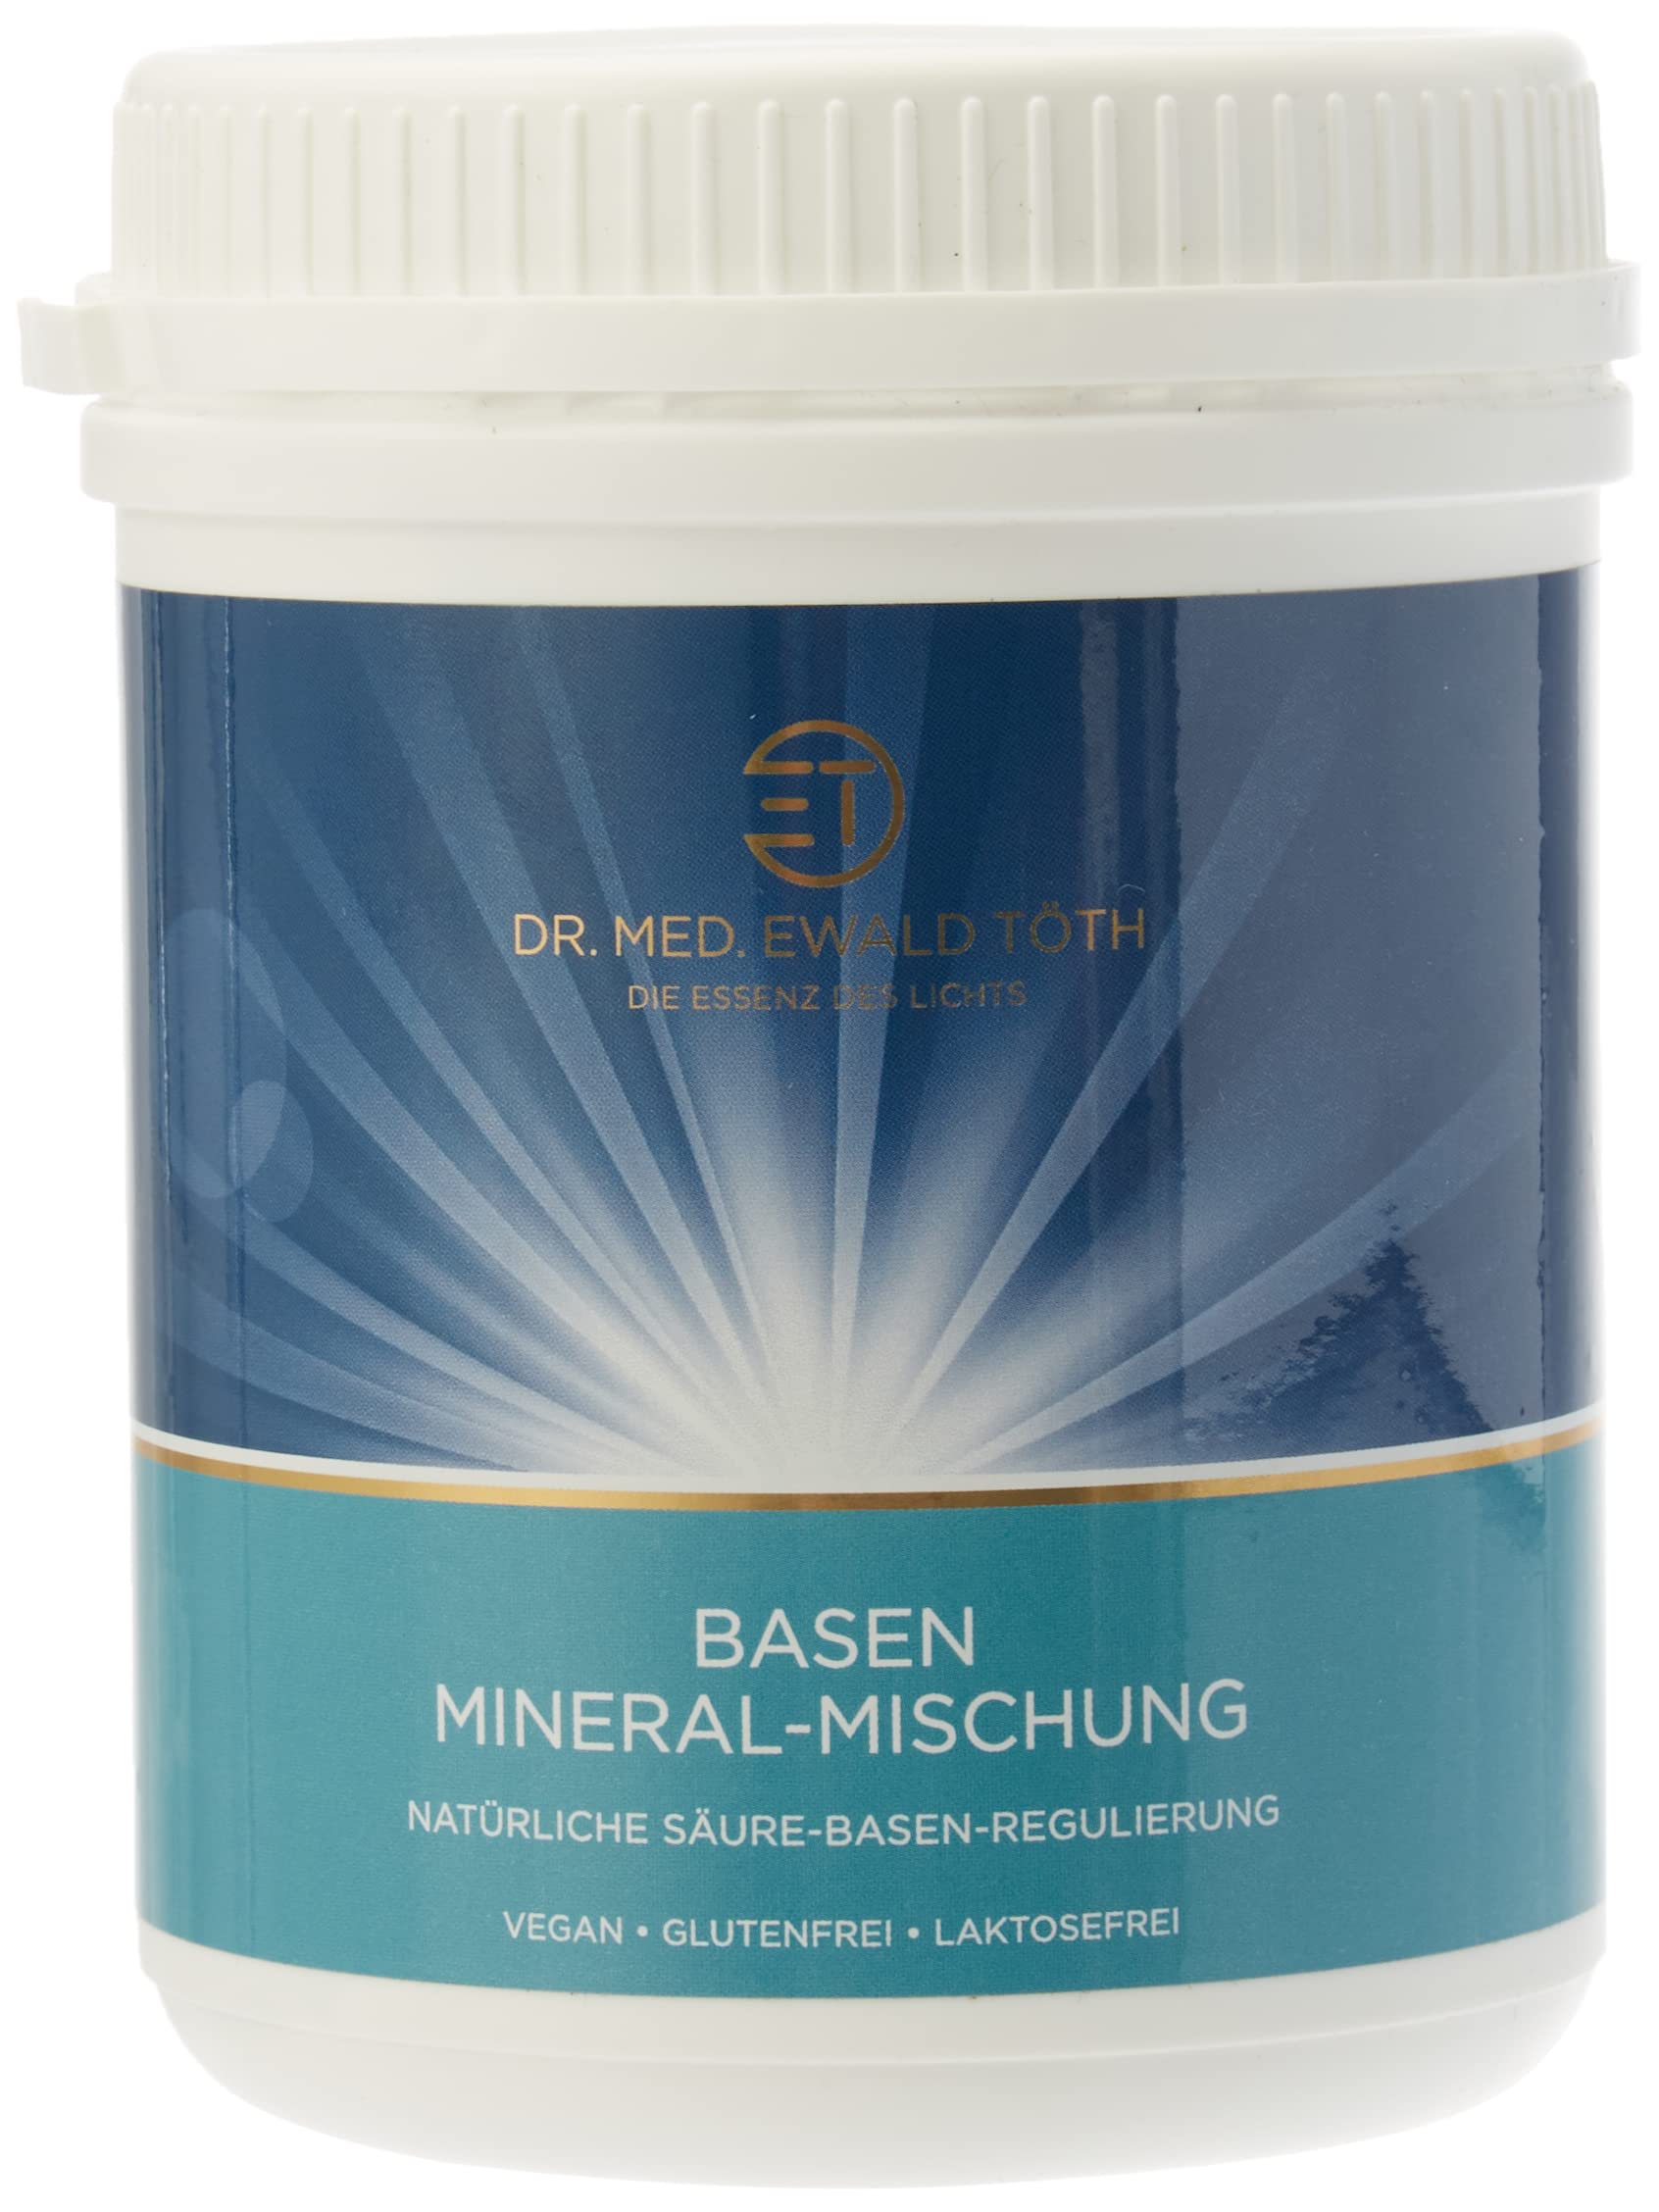 Basen Mineral Mischung von Dr. med. Ewald Töth (500g)